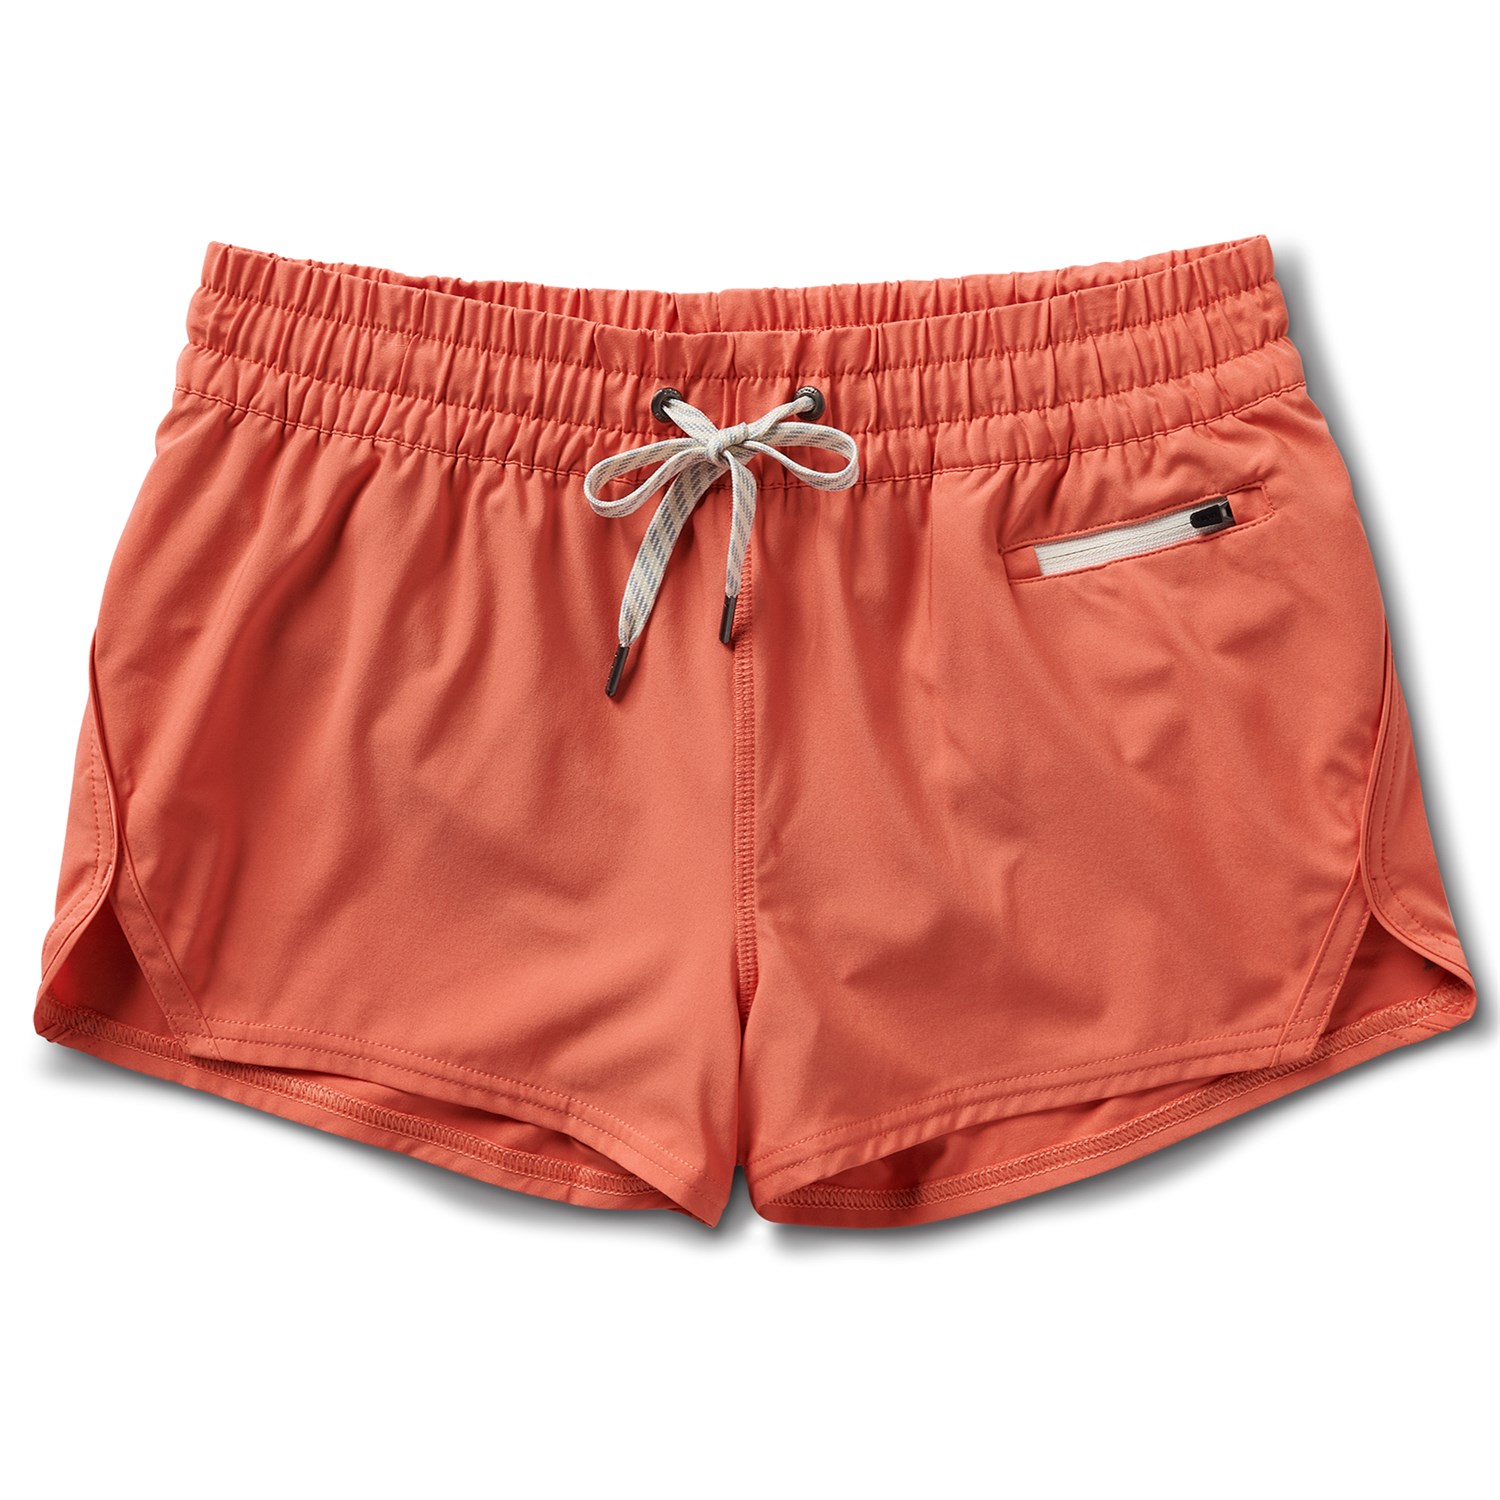 Vuori Clementine Shorts - Women's | evo